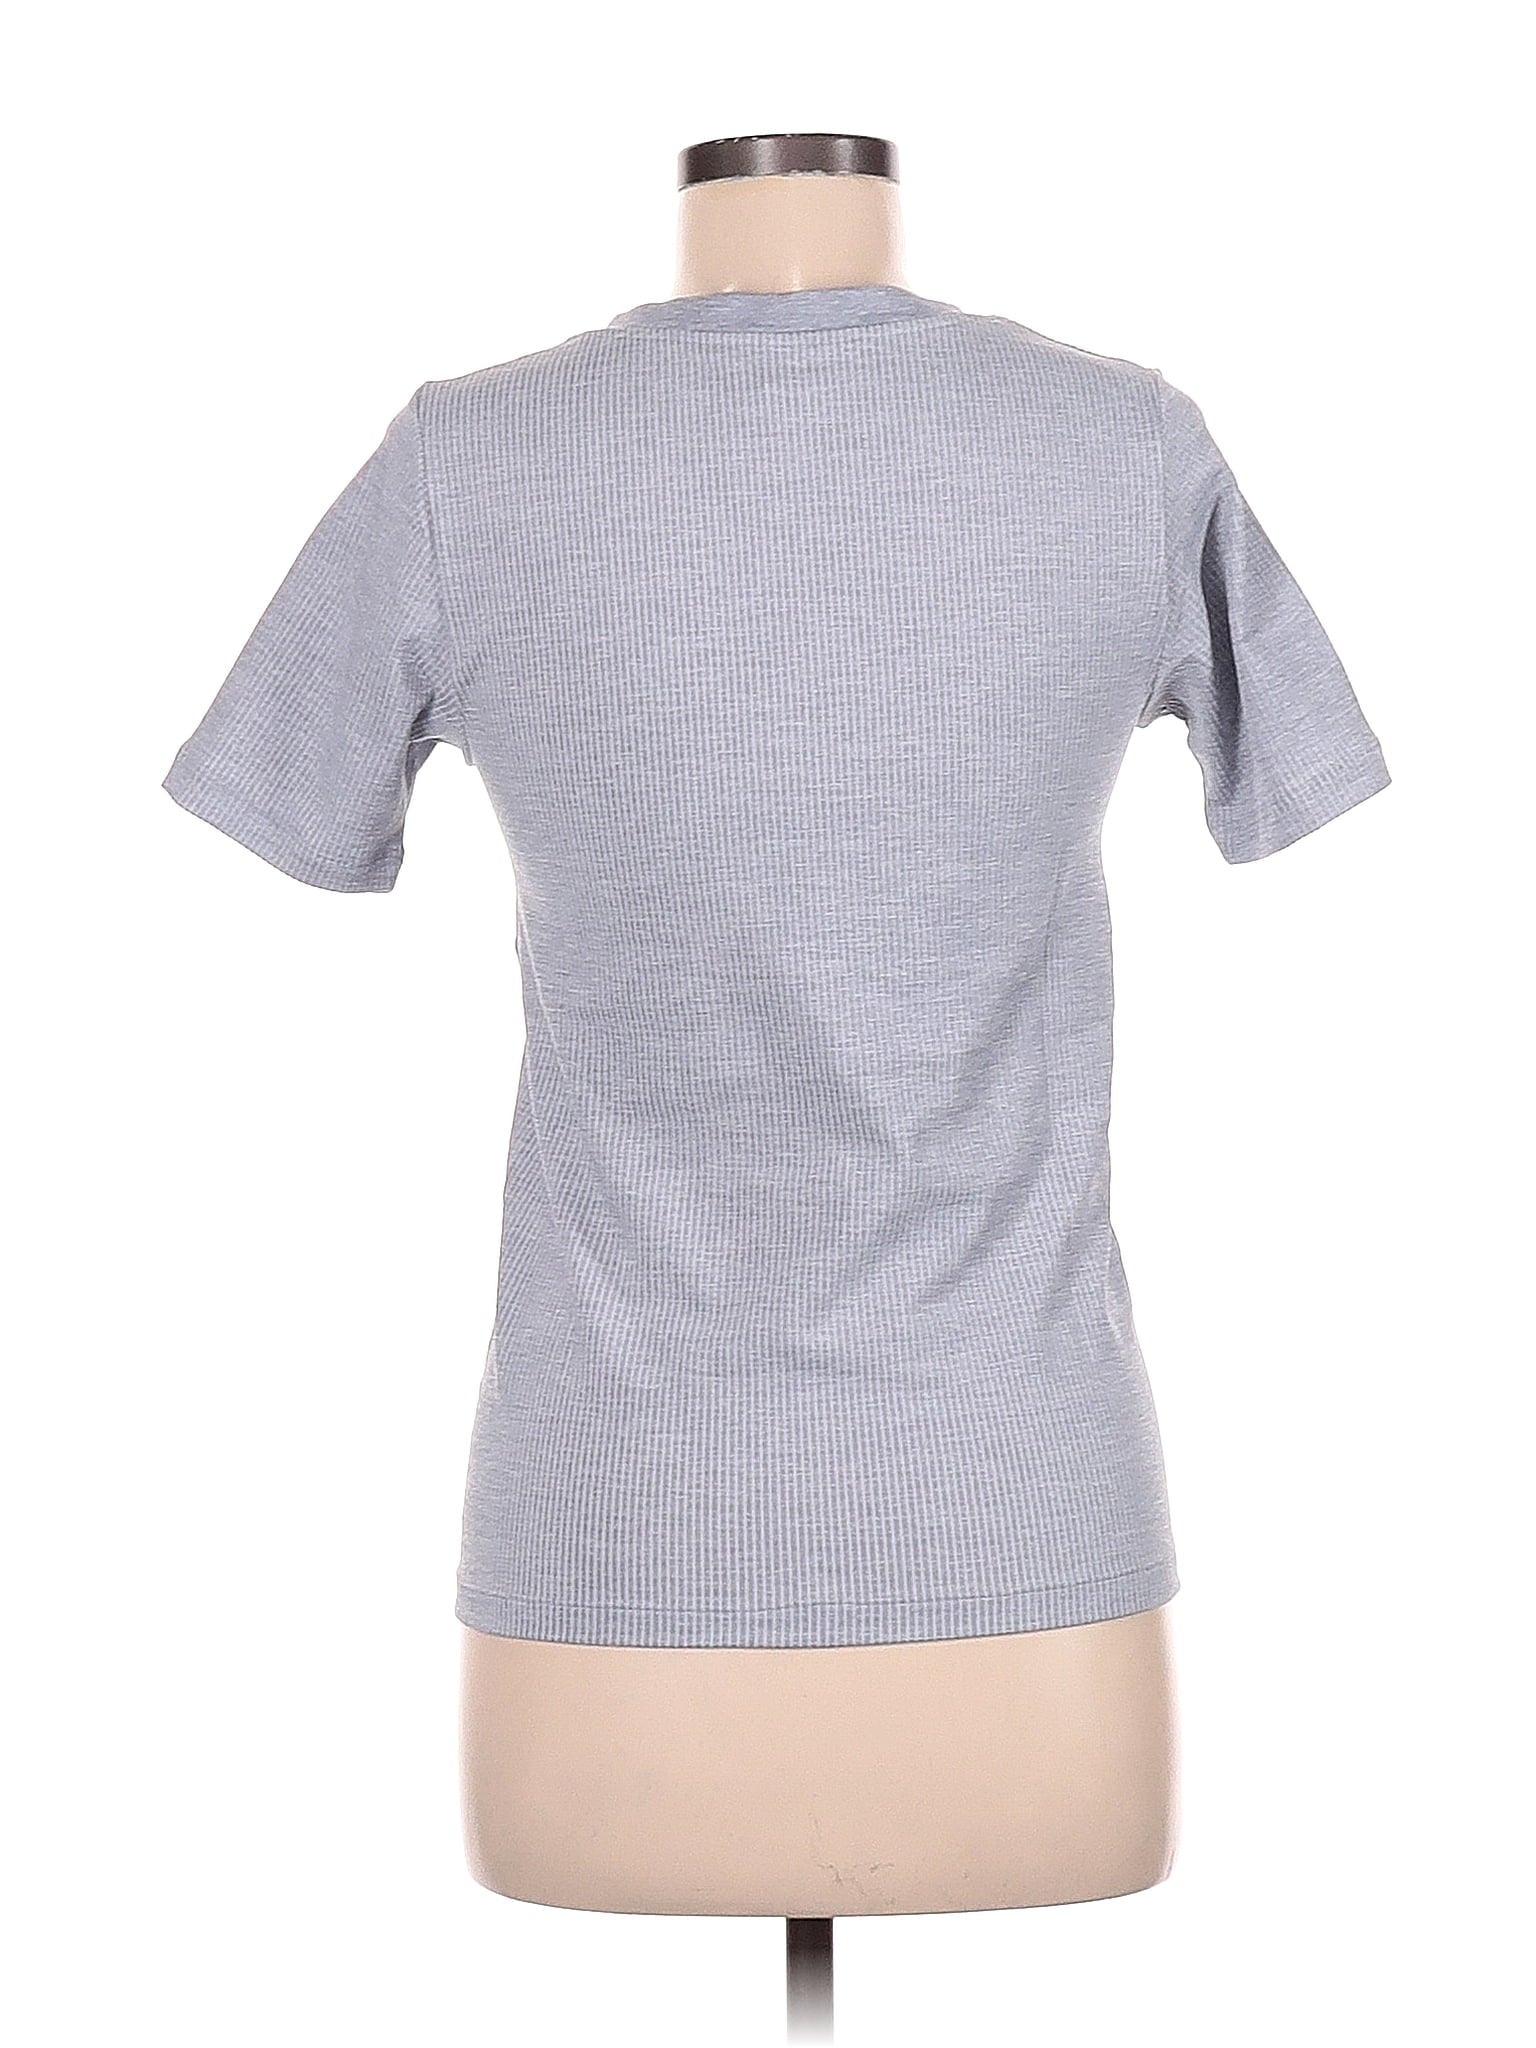 Active T Shirt size - M